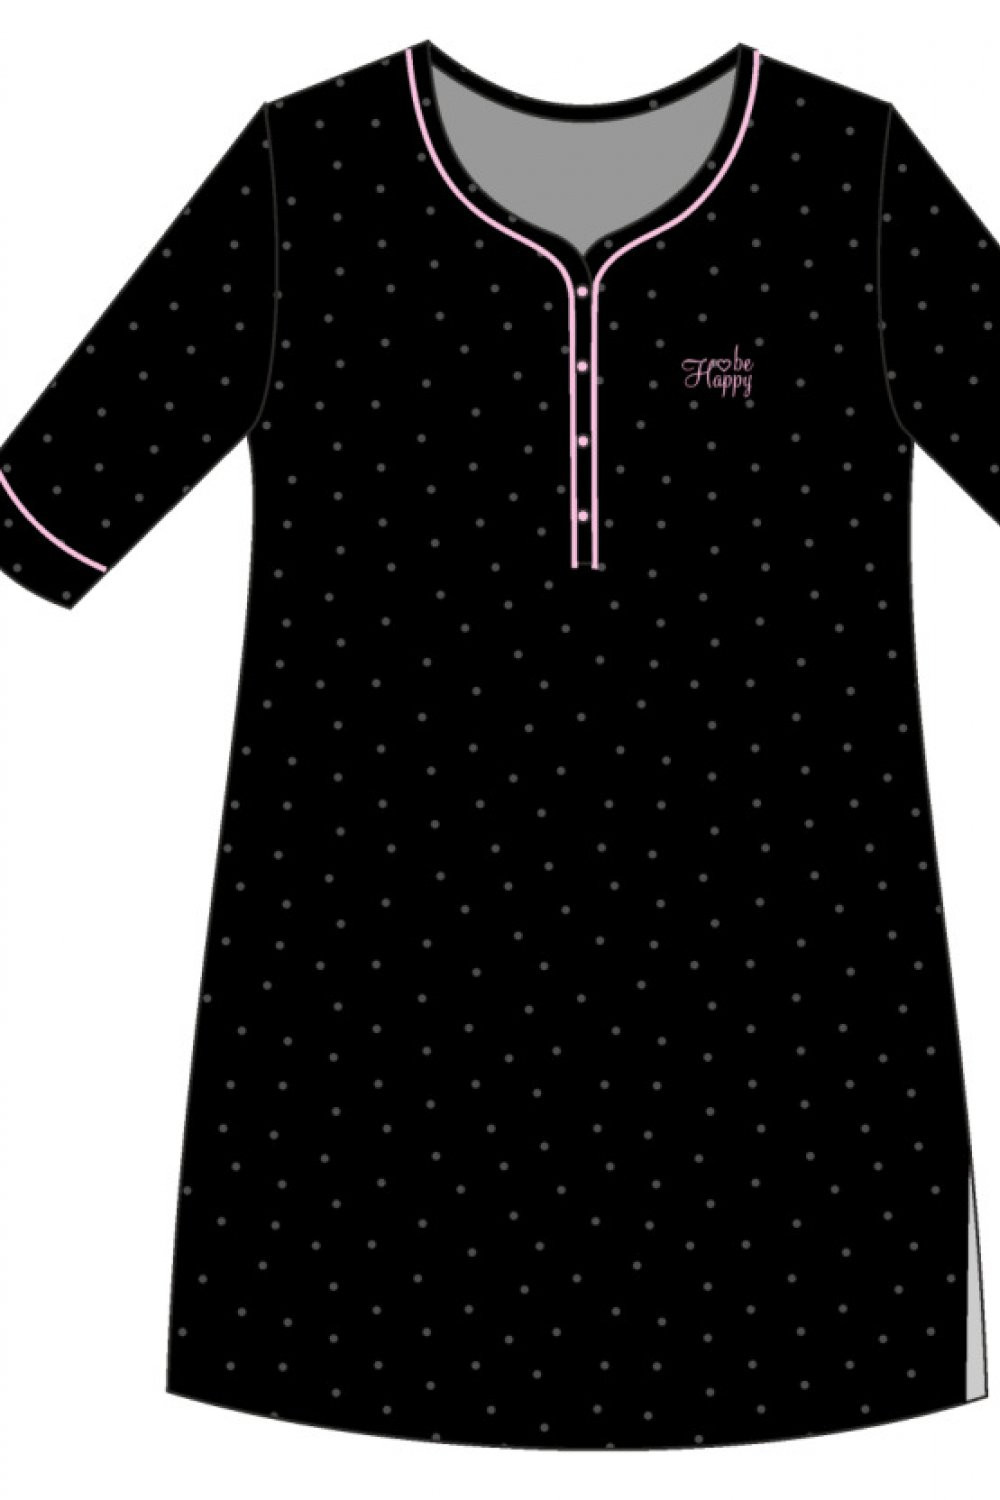 Noční košile Be 2 černá L model 16192795 - Cornette